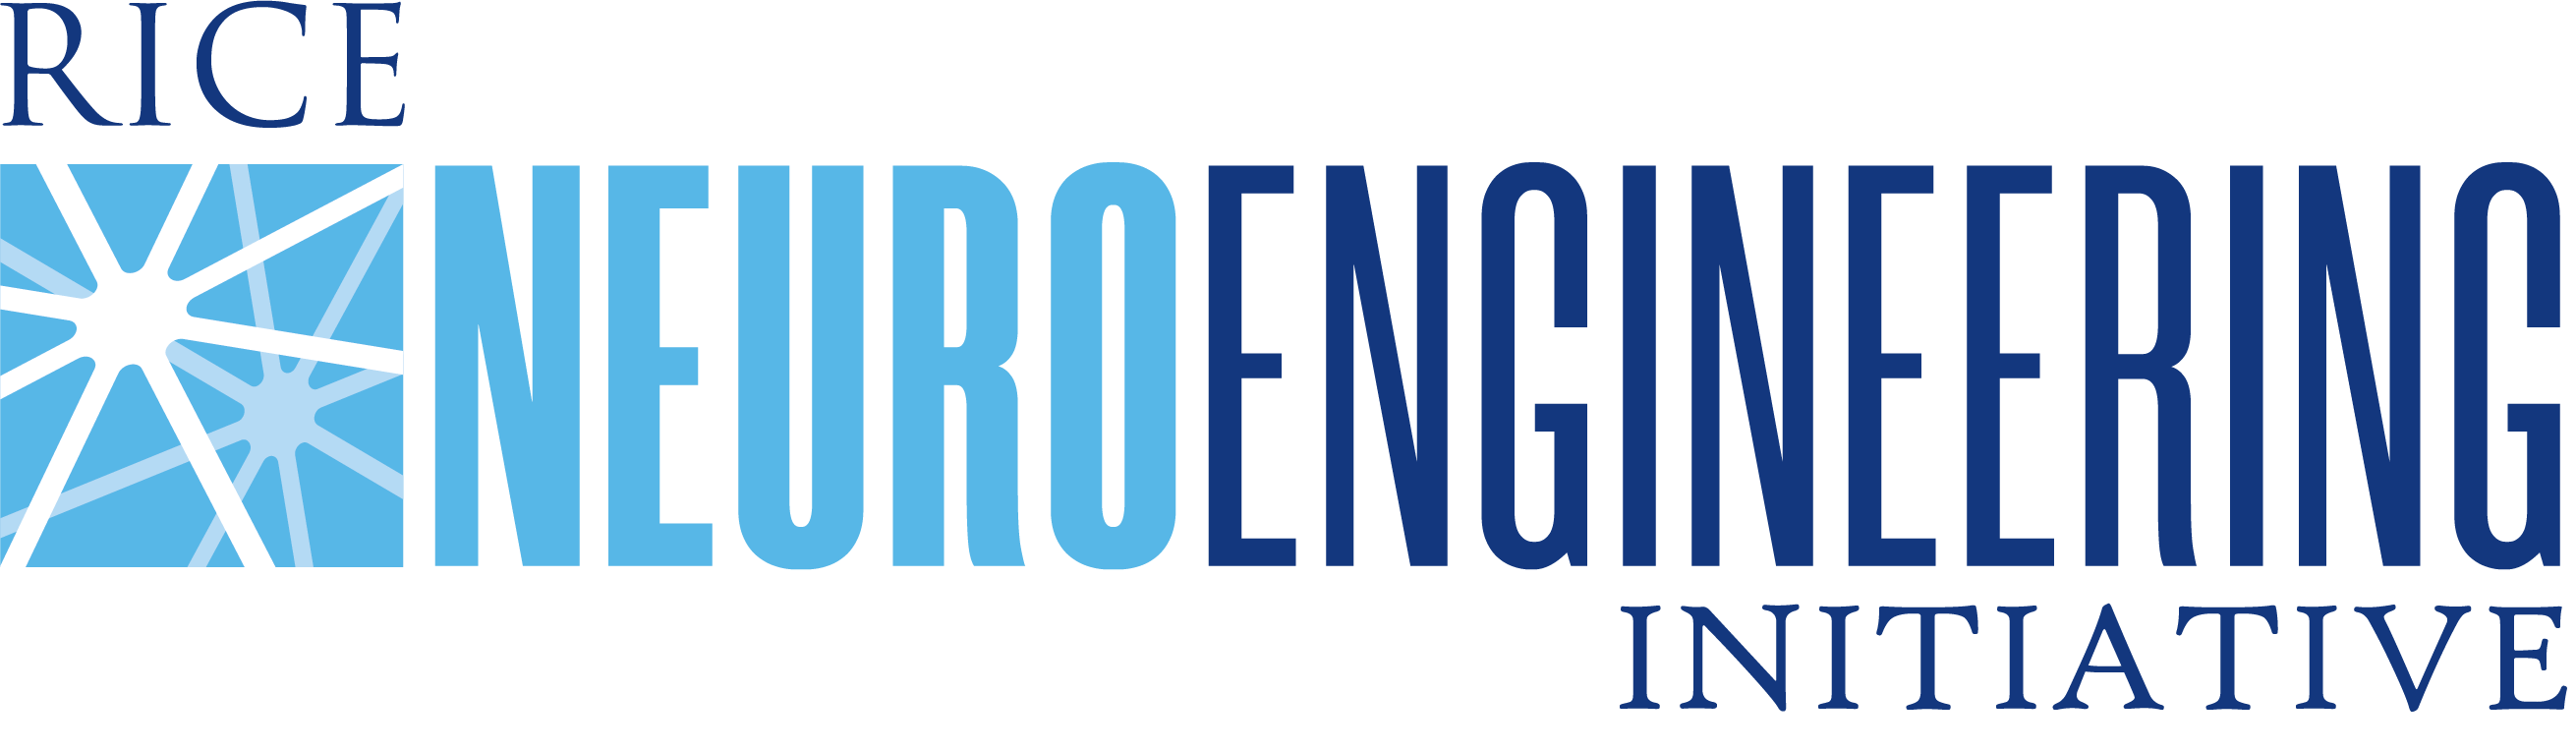 Rice University Neuroengineering Initiative Logo